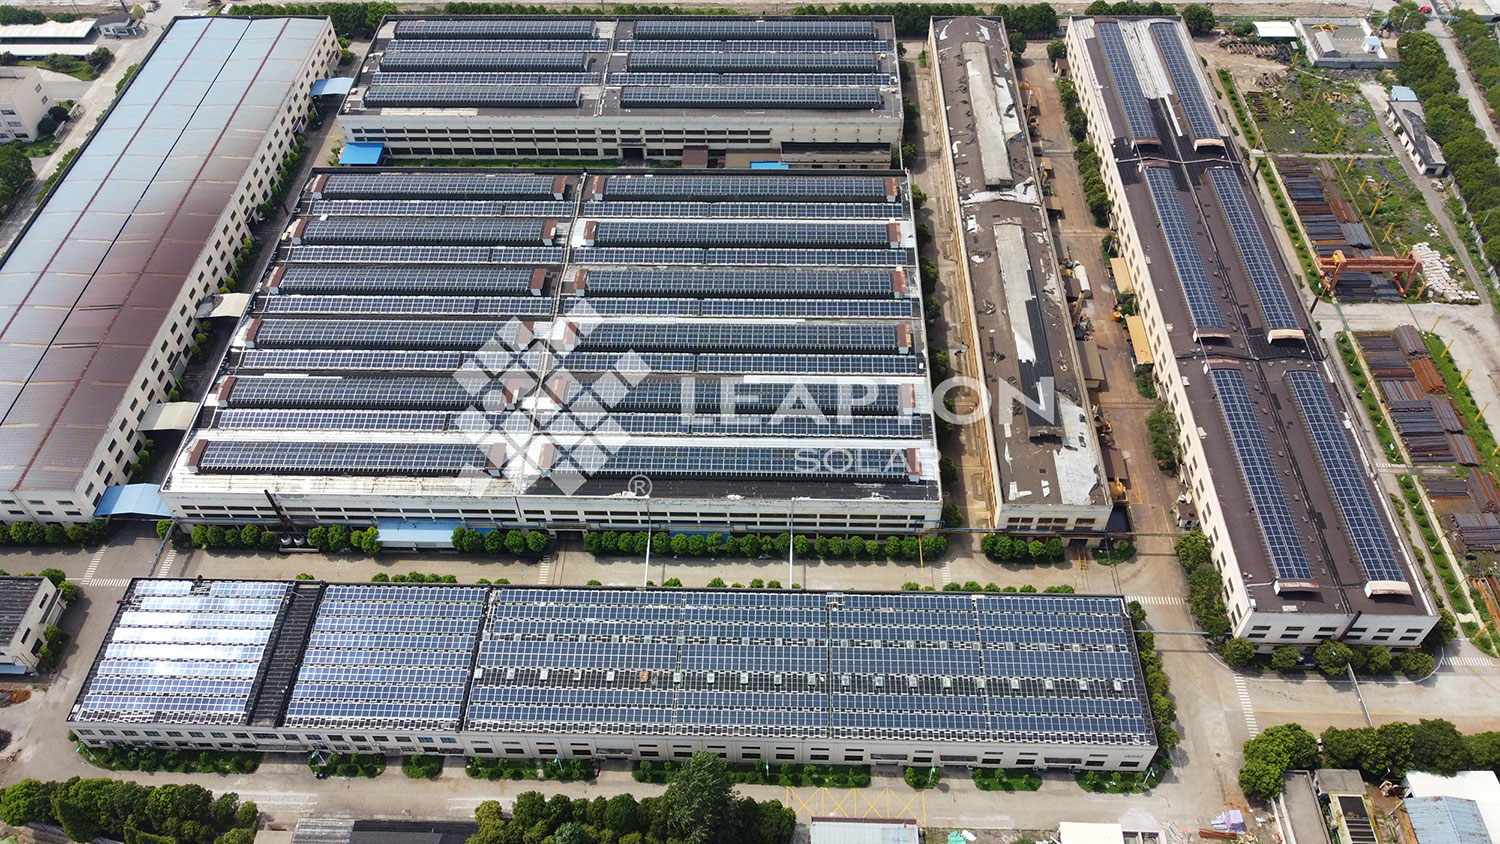 Leapton completou um projeto de 3,1MW de telhado de soalr na China